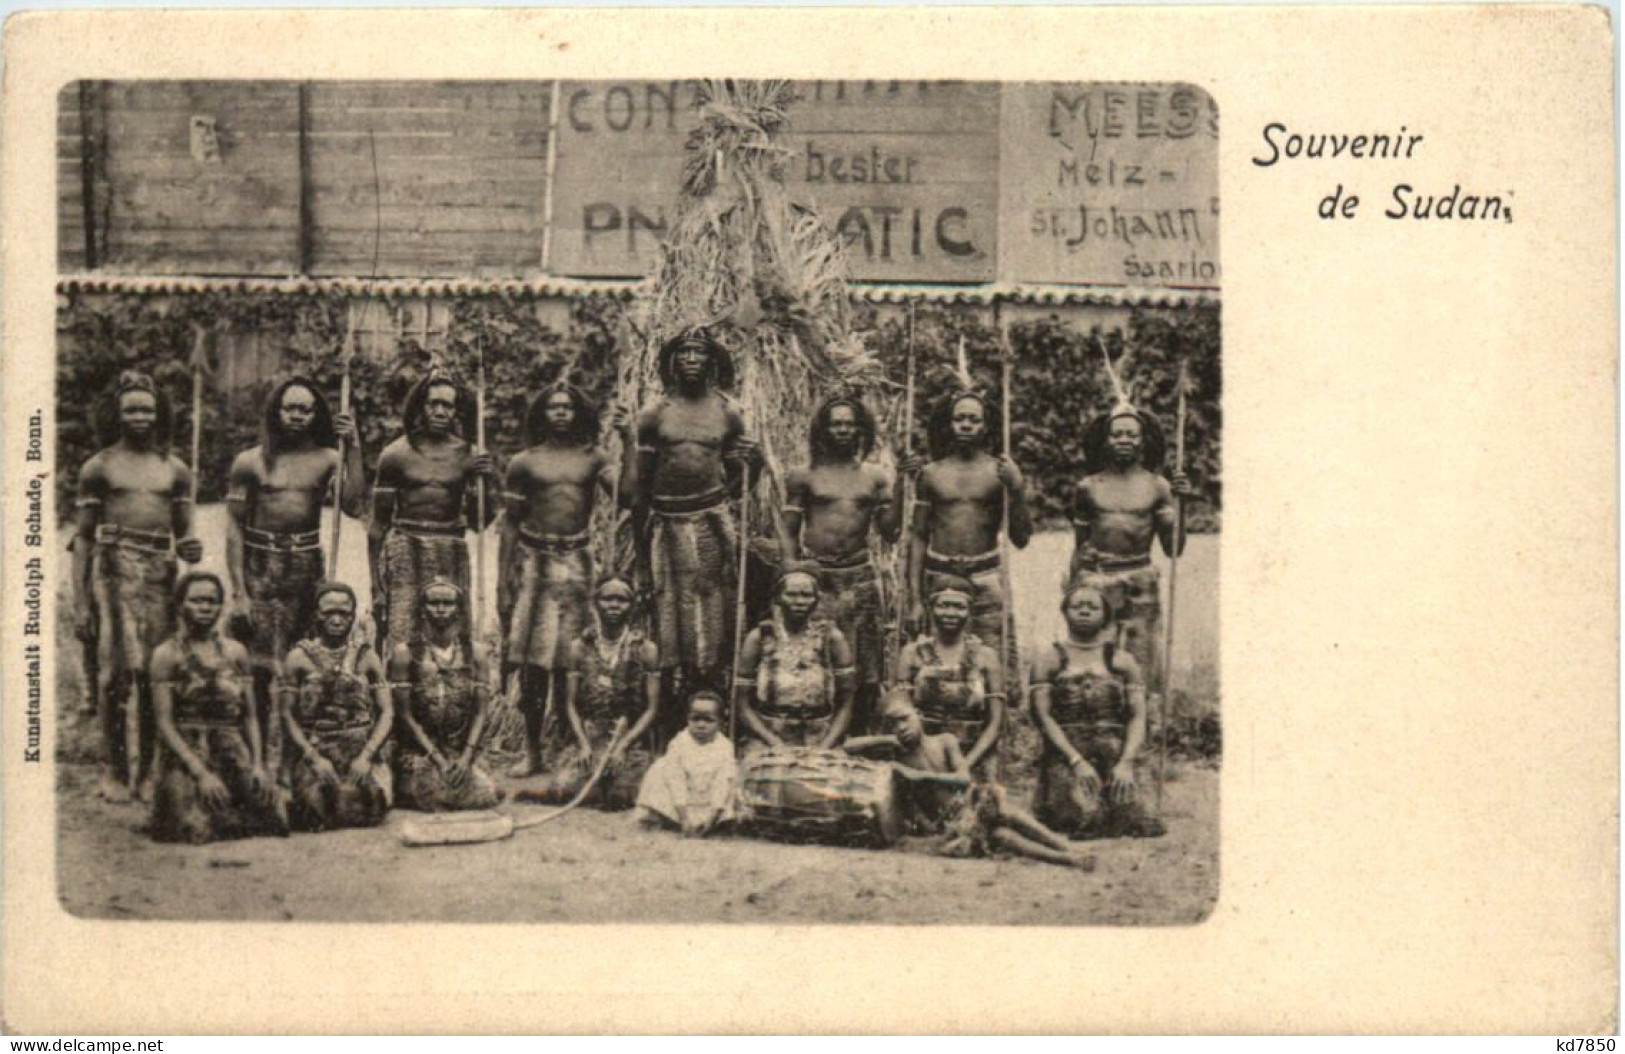 Souvenir De Sudan - Sudan